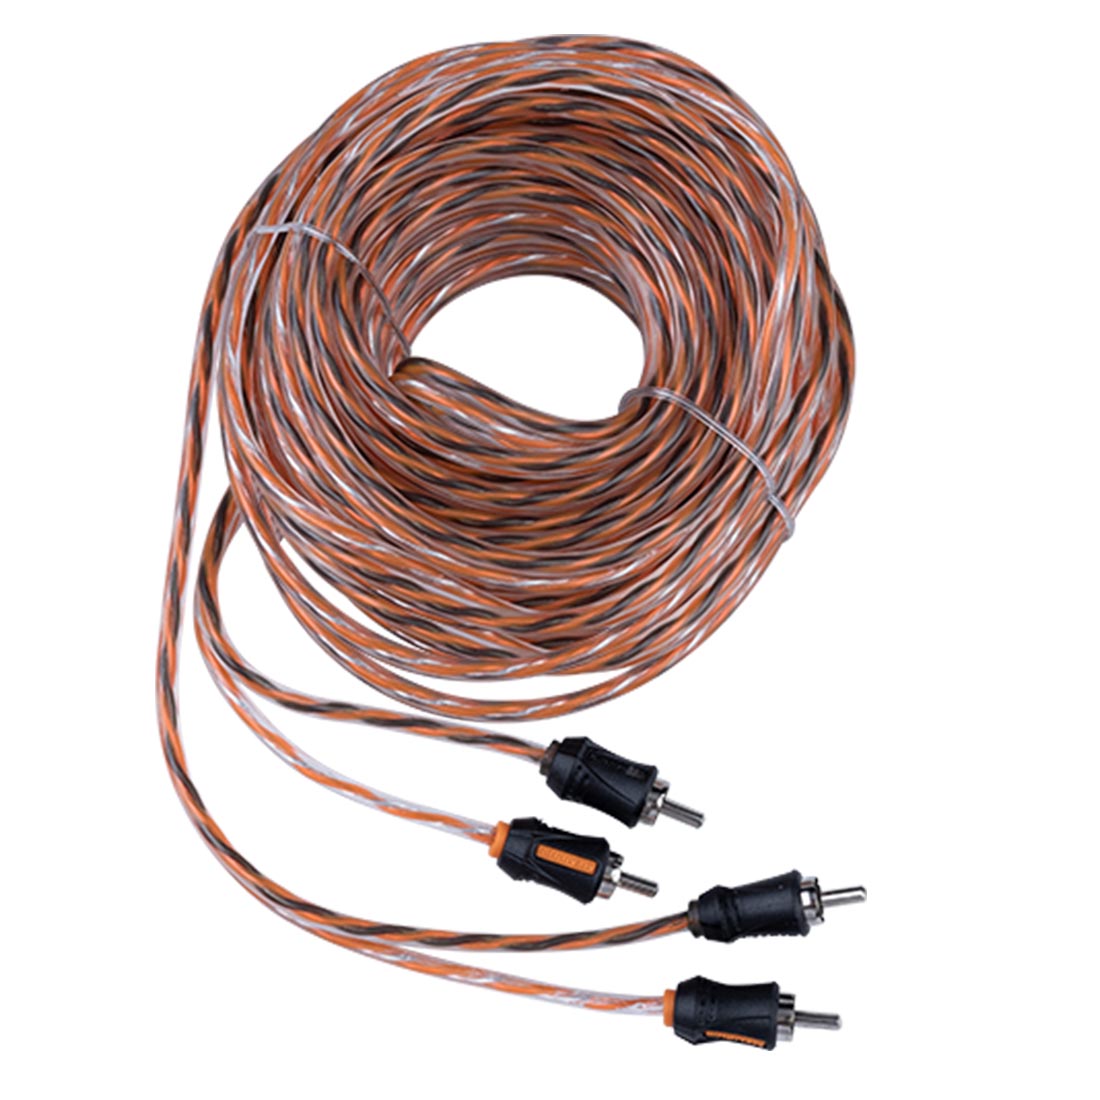 Memphis Audio ETP-21 21-Foot 2-Channel Audio Interconnect Cables